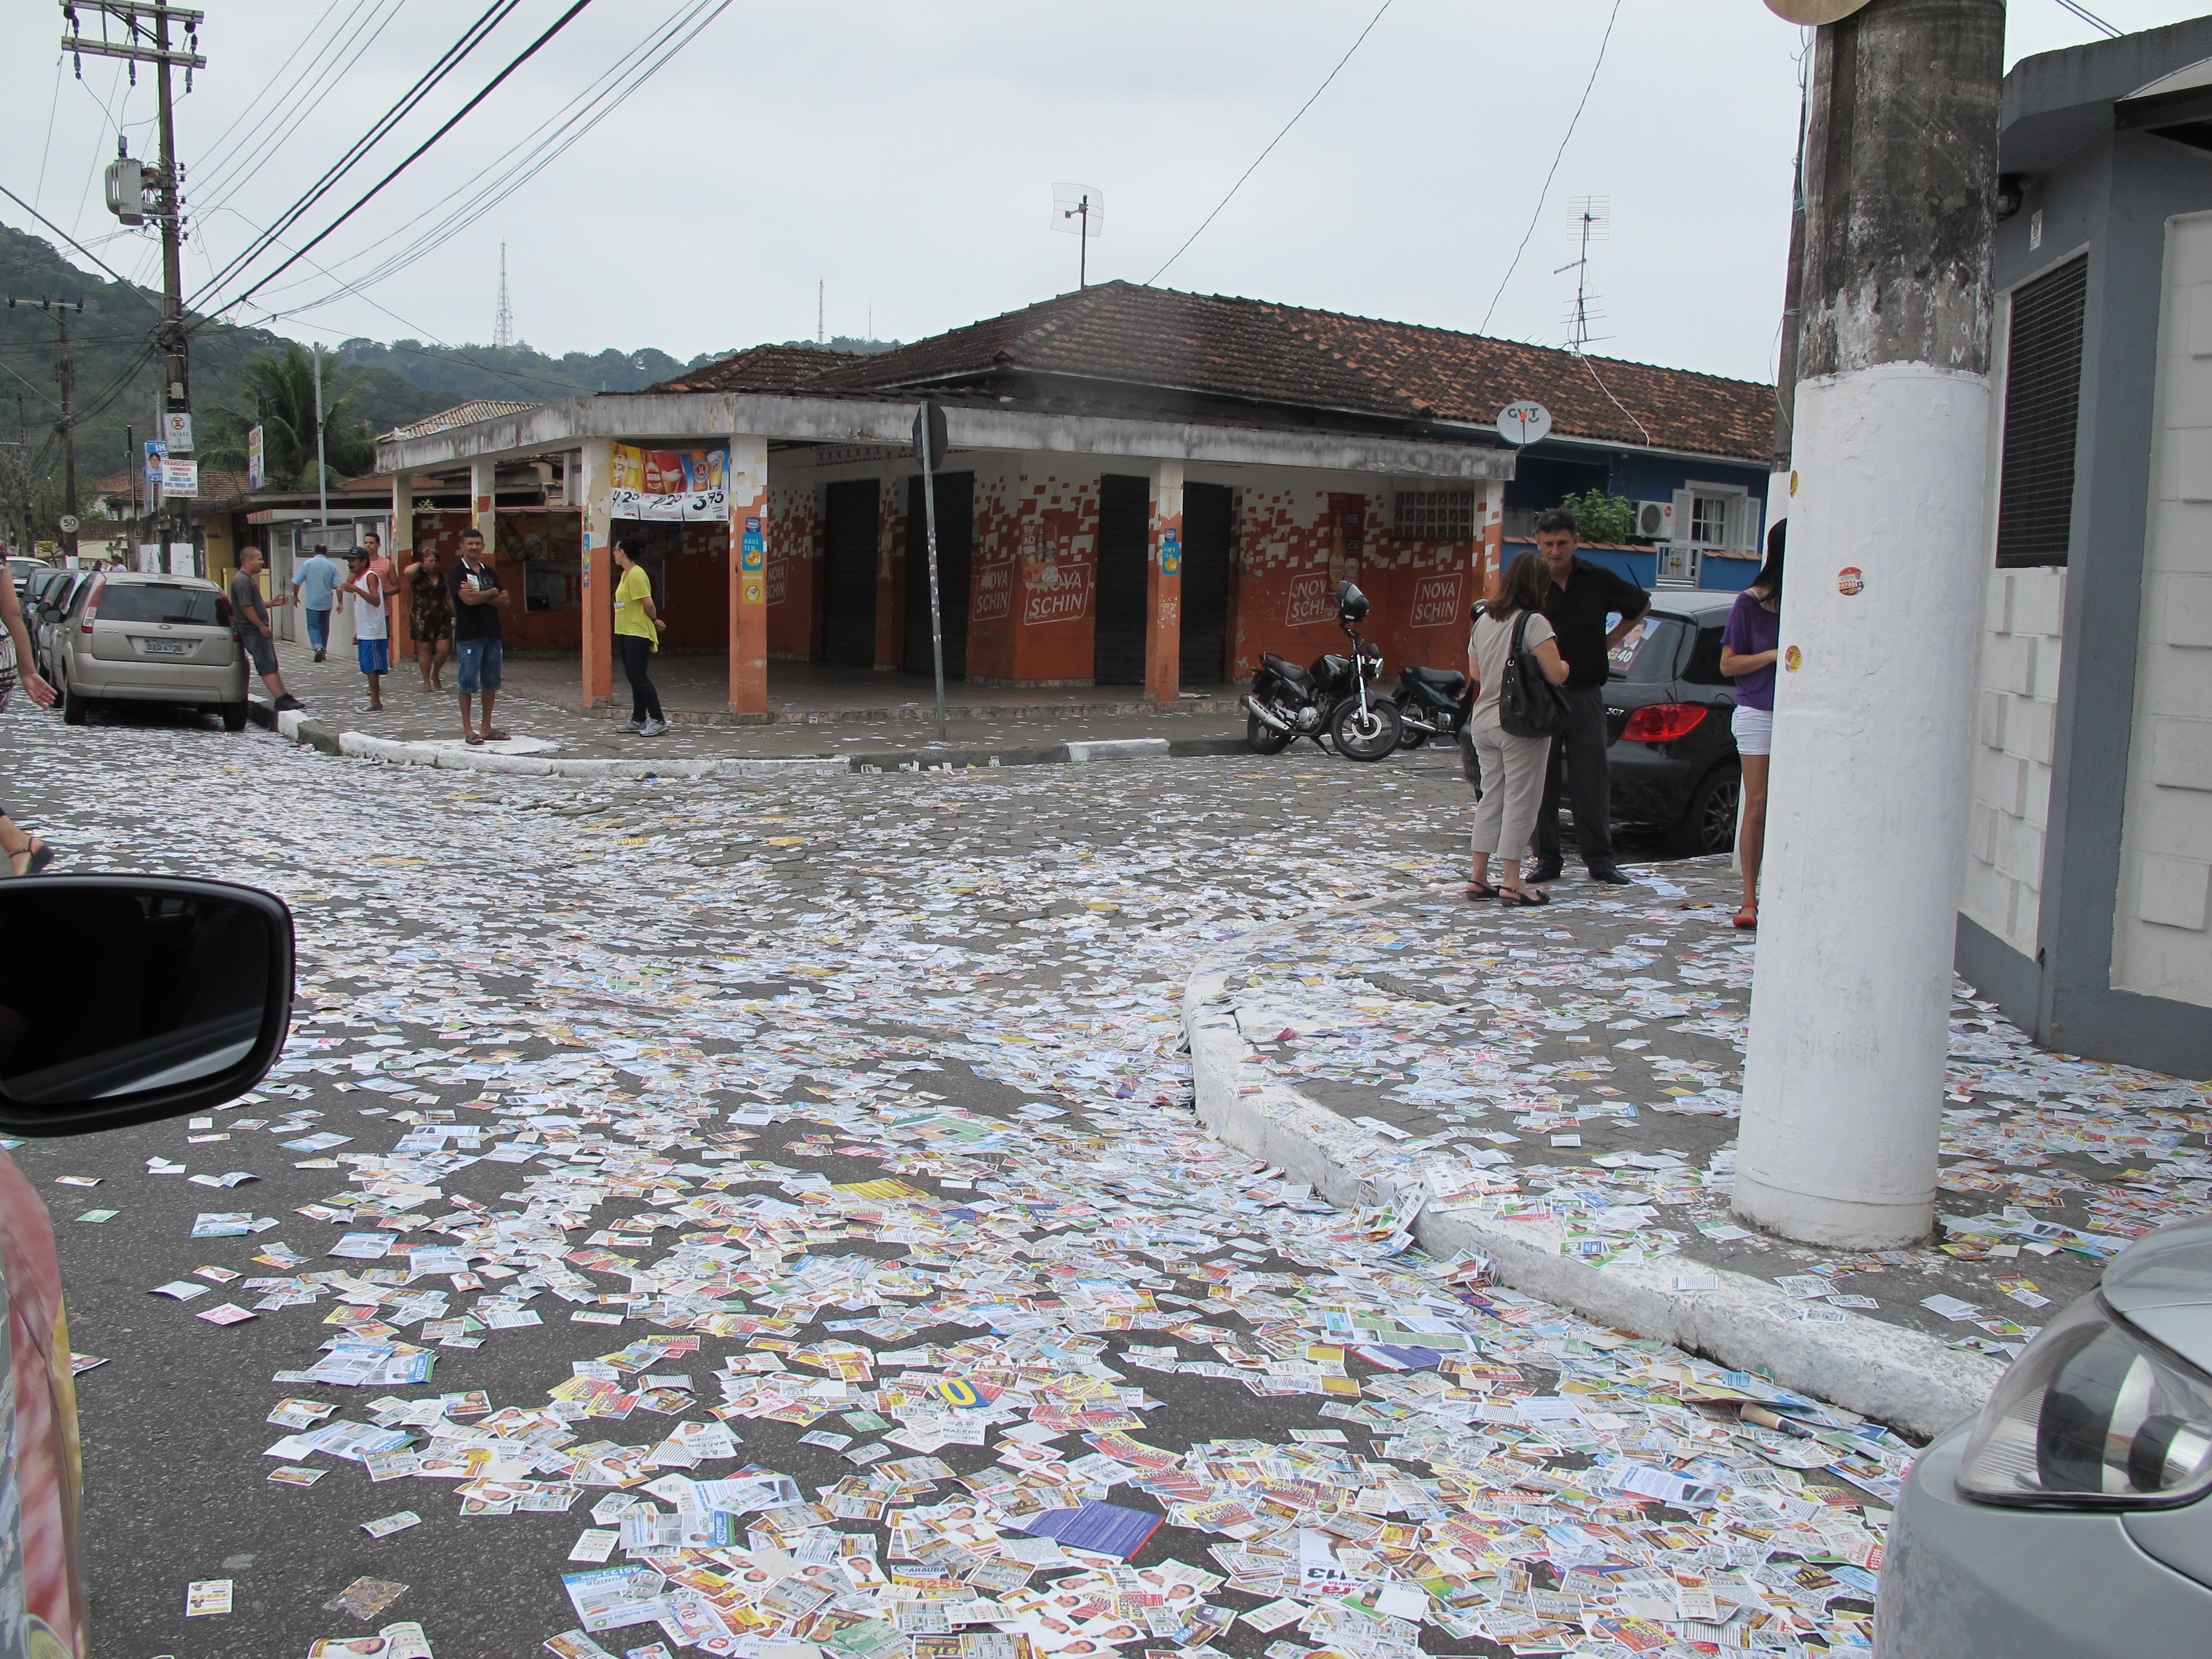  Em São Vicente, a rua Costa Rego tinha folhetos de candidatos em toda a sua extensão